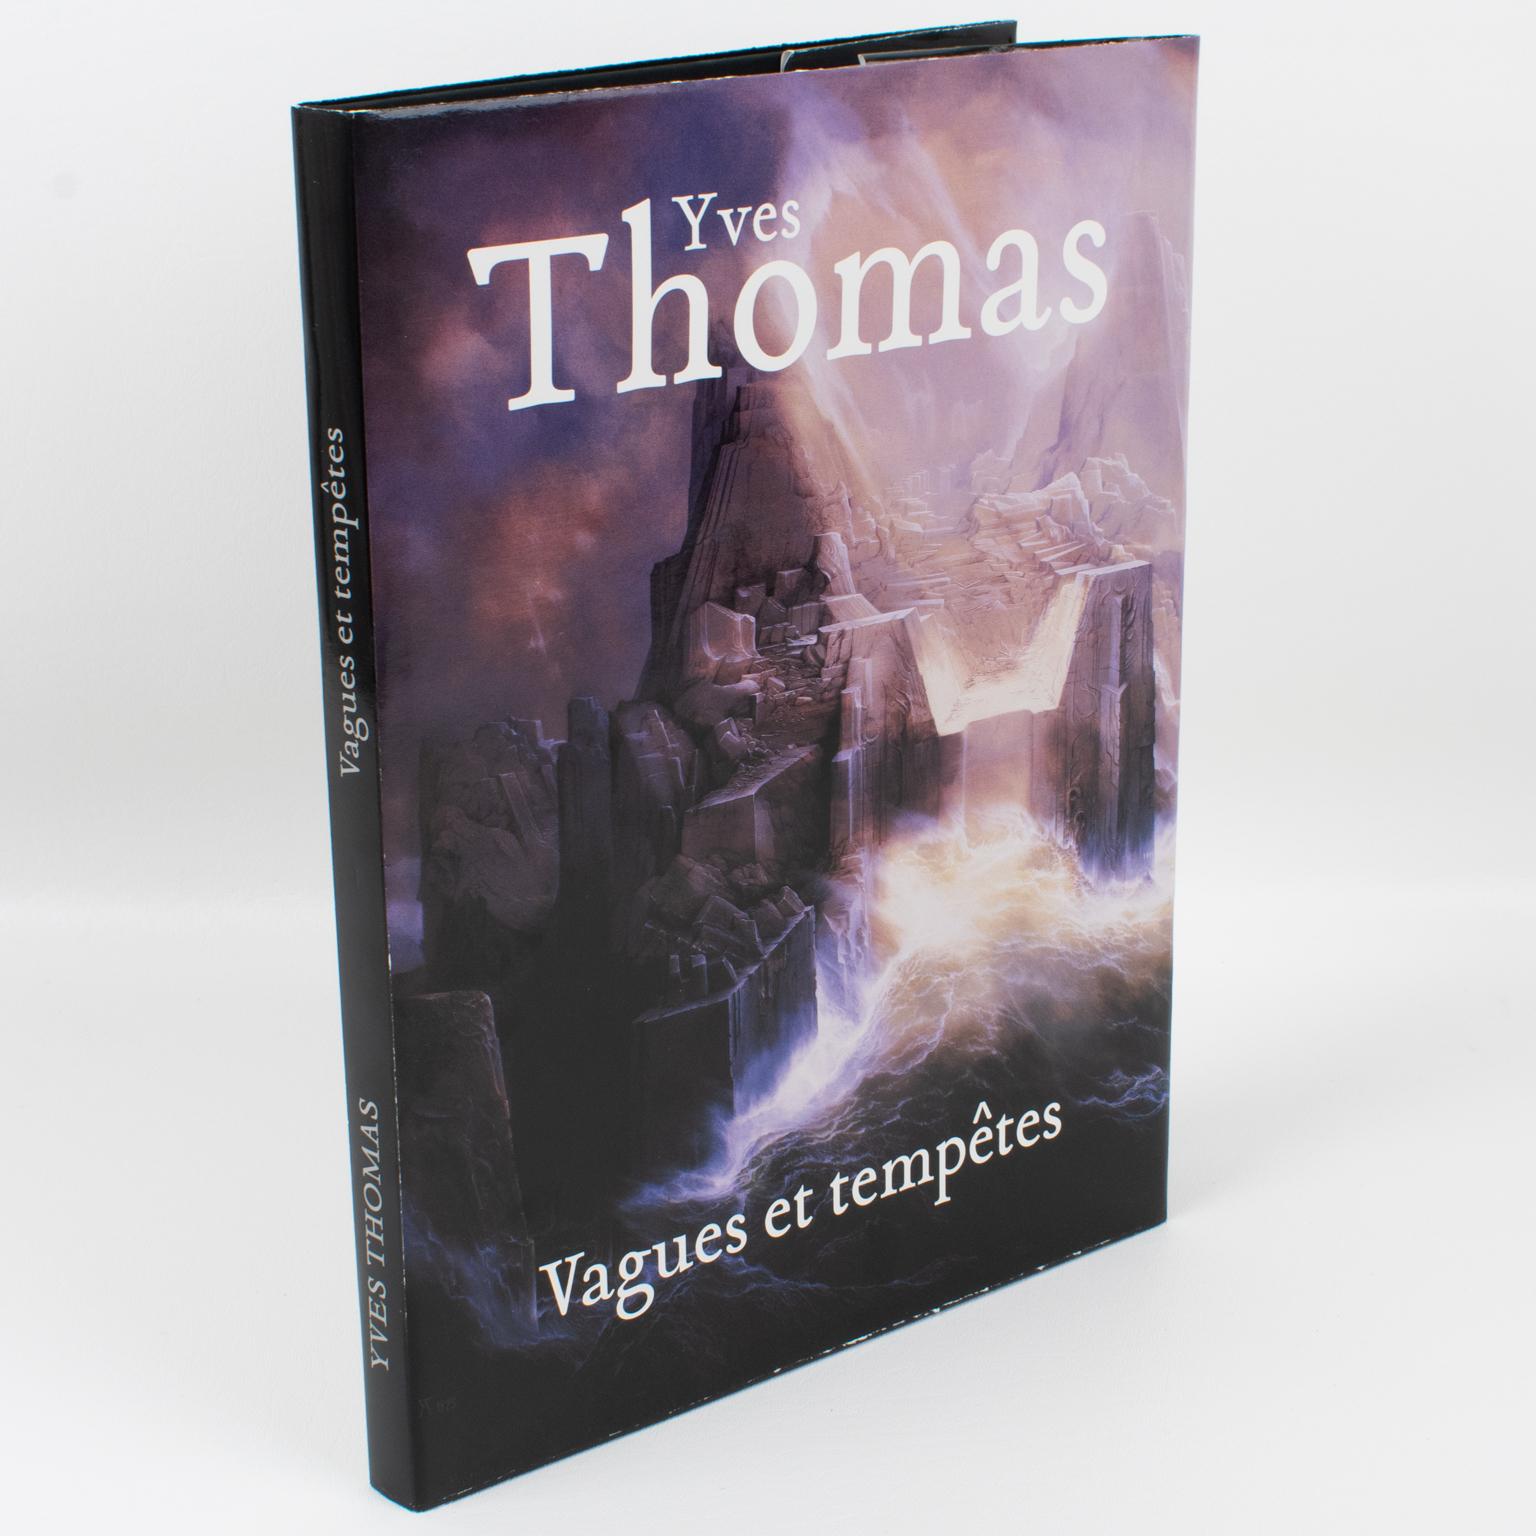 Yves Thomas, Vagues et Tempêtes, livre français-anglais d'Yves Thomas, 2011.
Yves Thomas est un artiste français reconnu et répertorié, né en 1937 en Normandie. 
Les plus belles œuvres d'Yves Thomas ont quelque chose de musical, la sonate, la